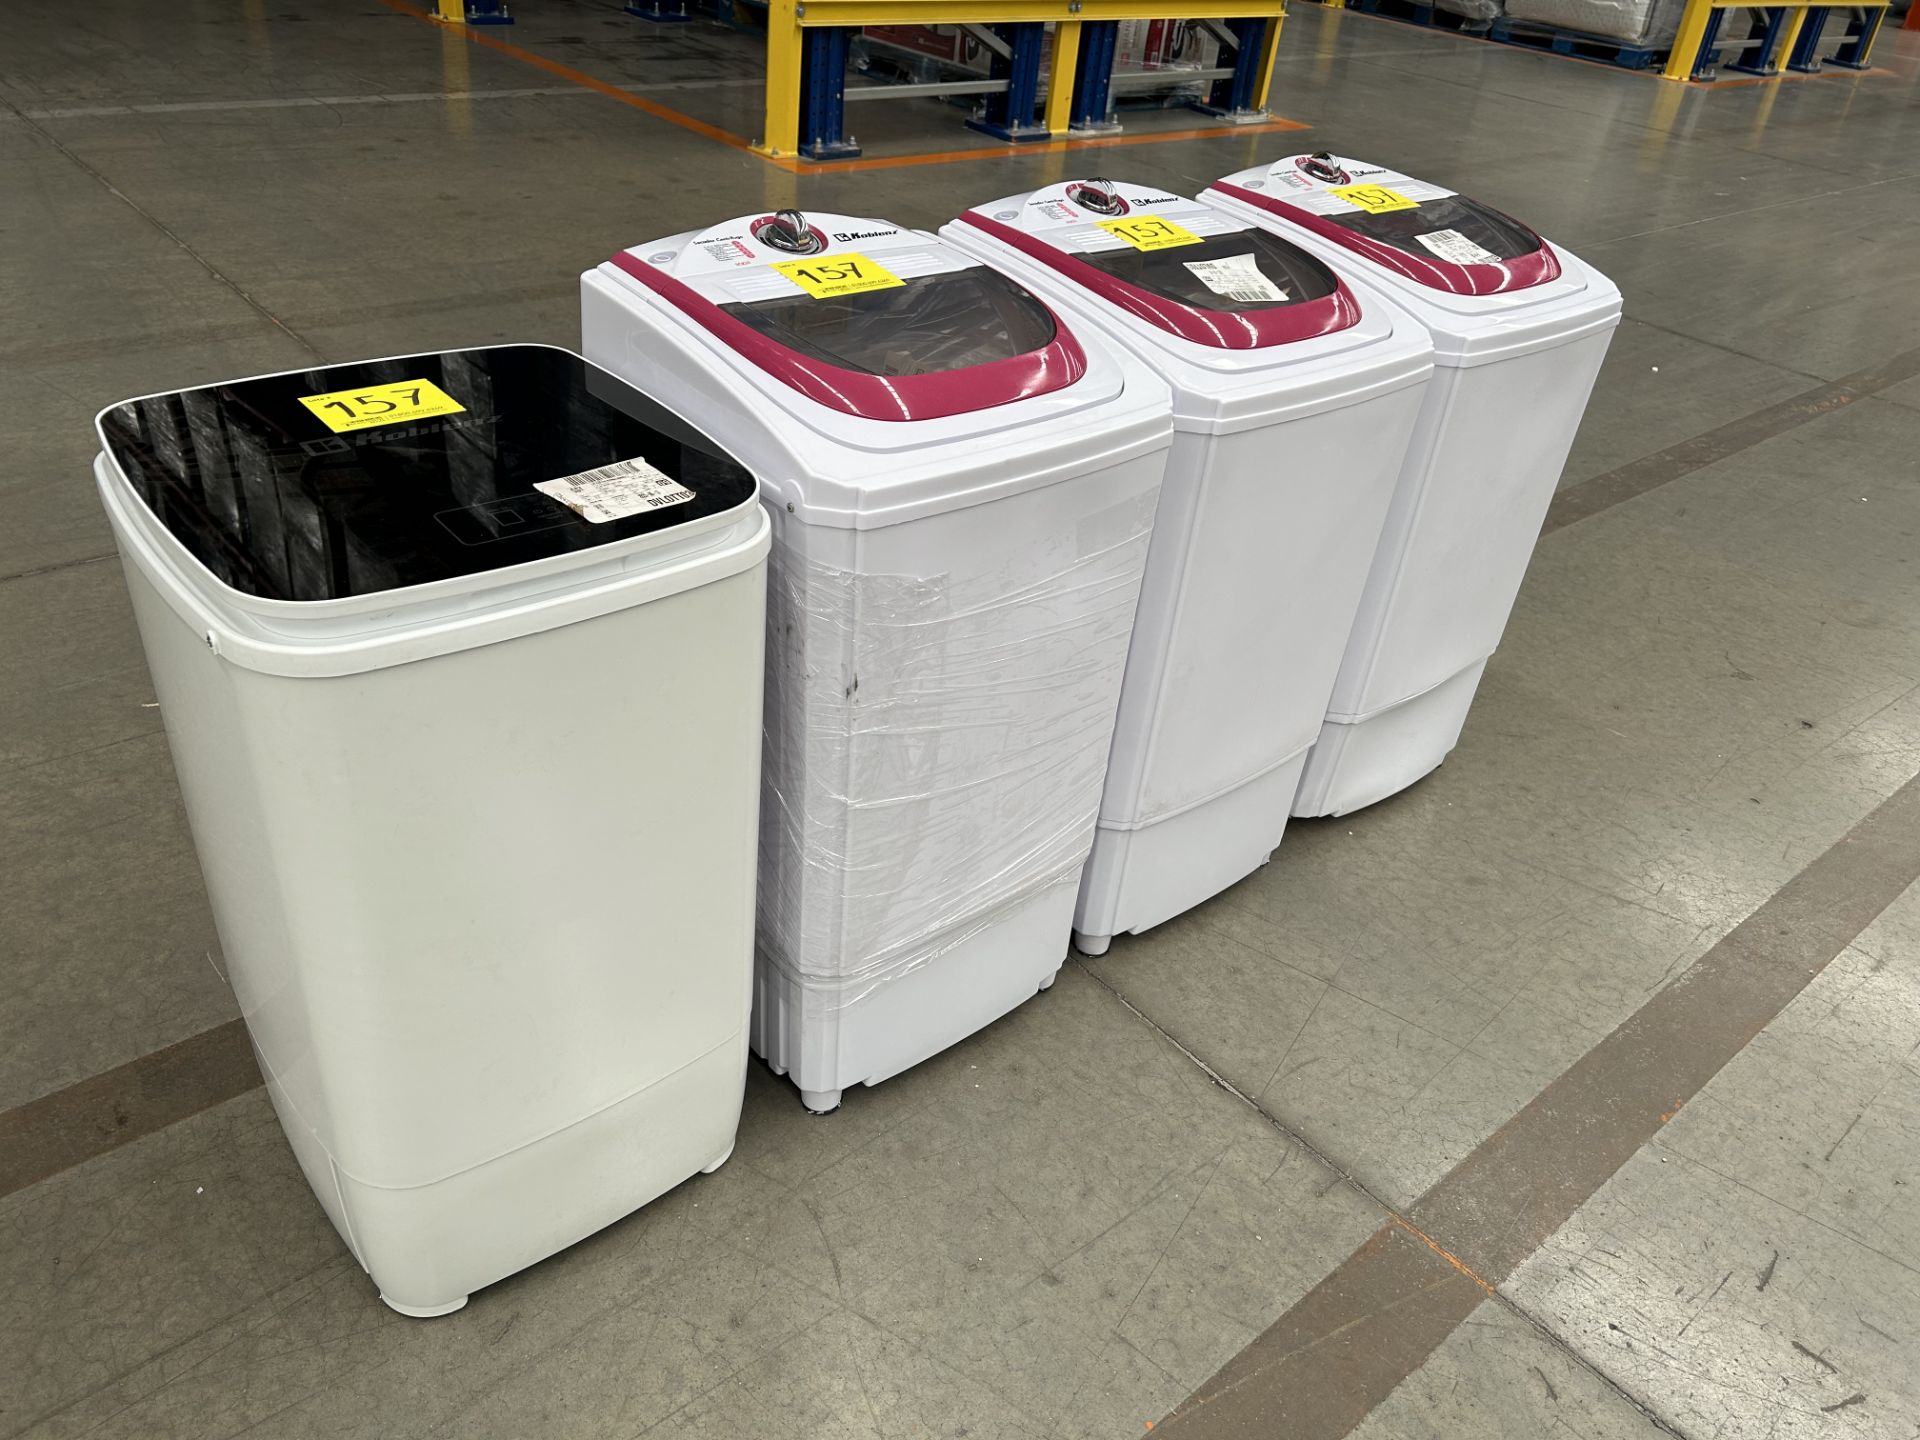 Lote de 4 lavadoras contiene: 1 secador centrifugado Marca KOBLENZ, Modelo SCK55; 1 secador centrif - Image 3 of 5